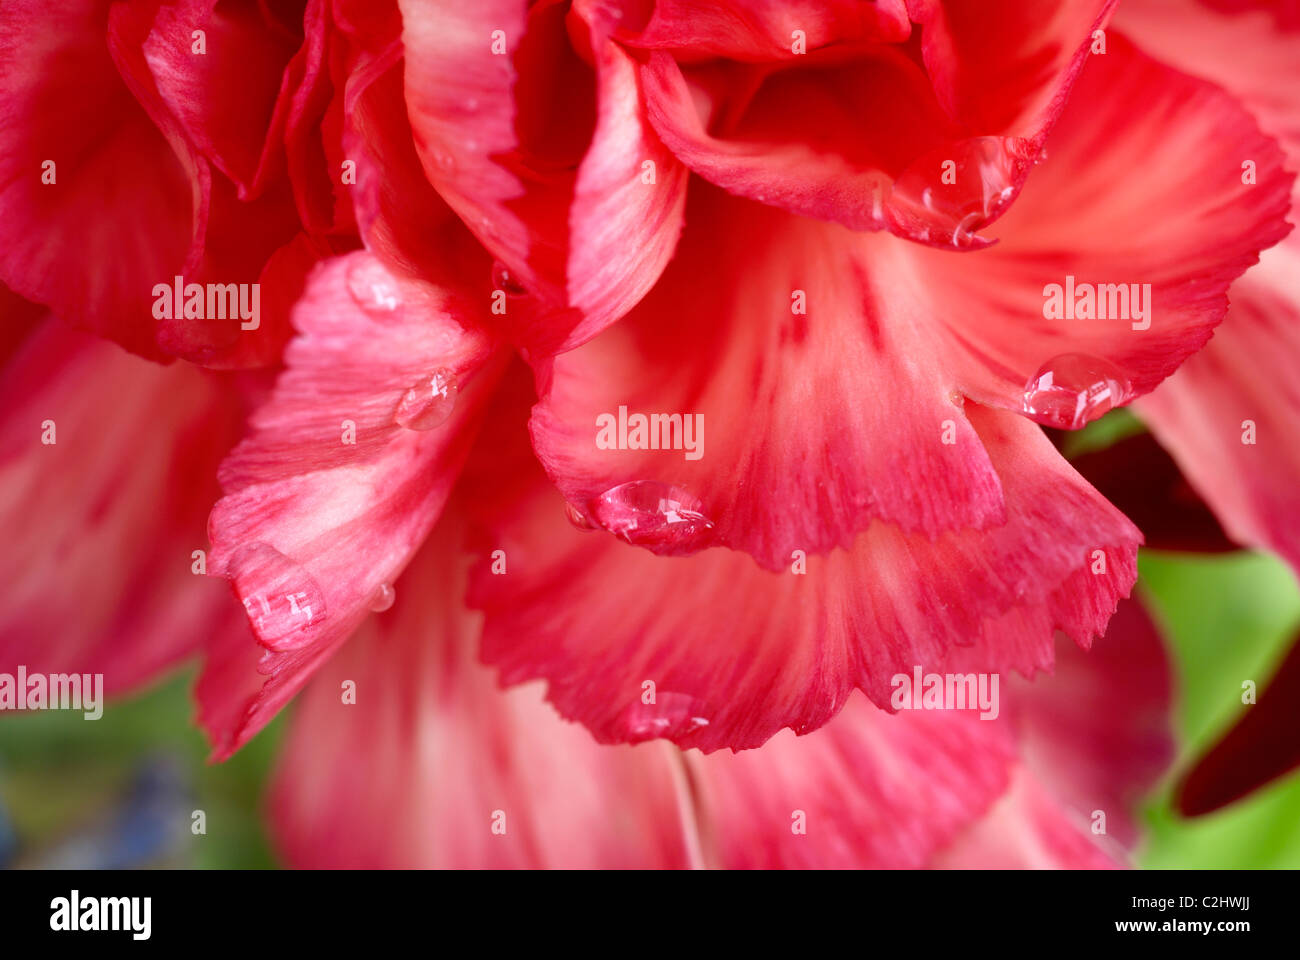 Carnation, petals, close-up Stock Photo